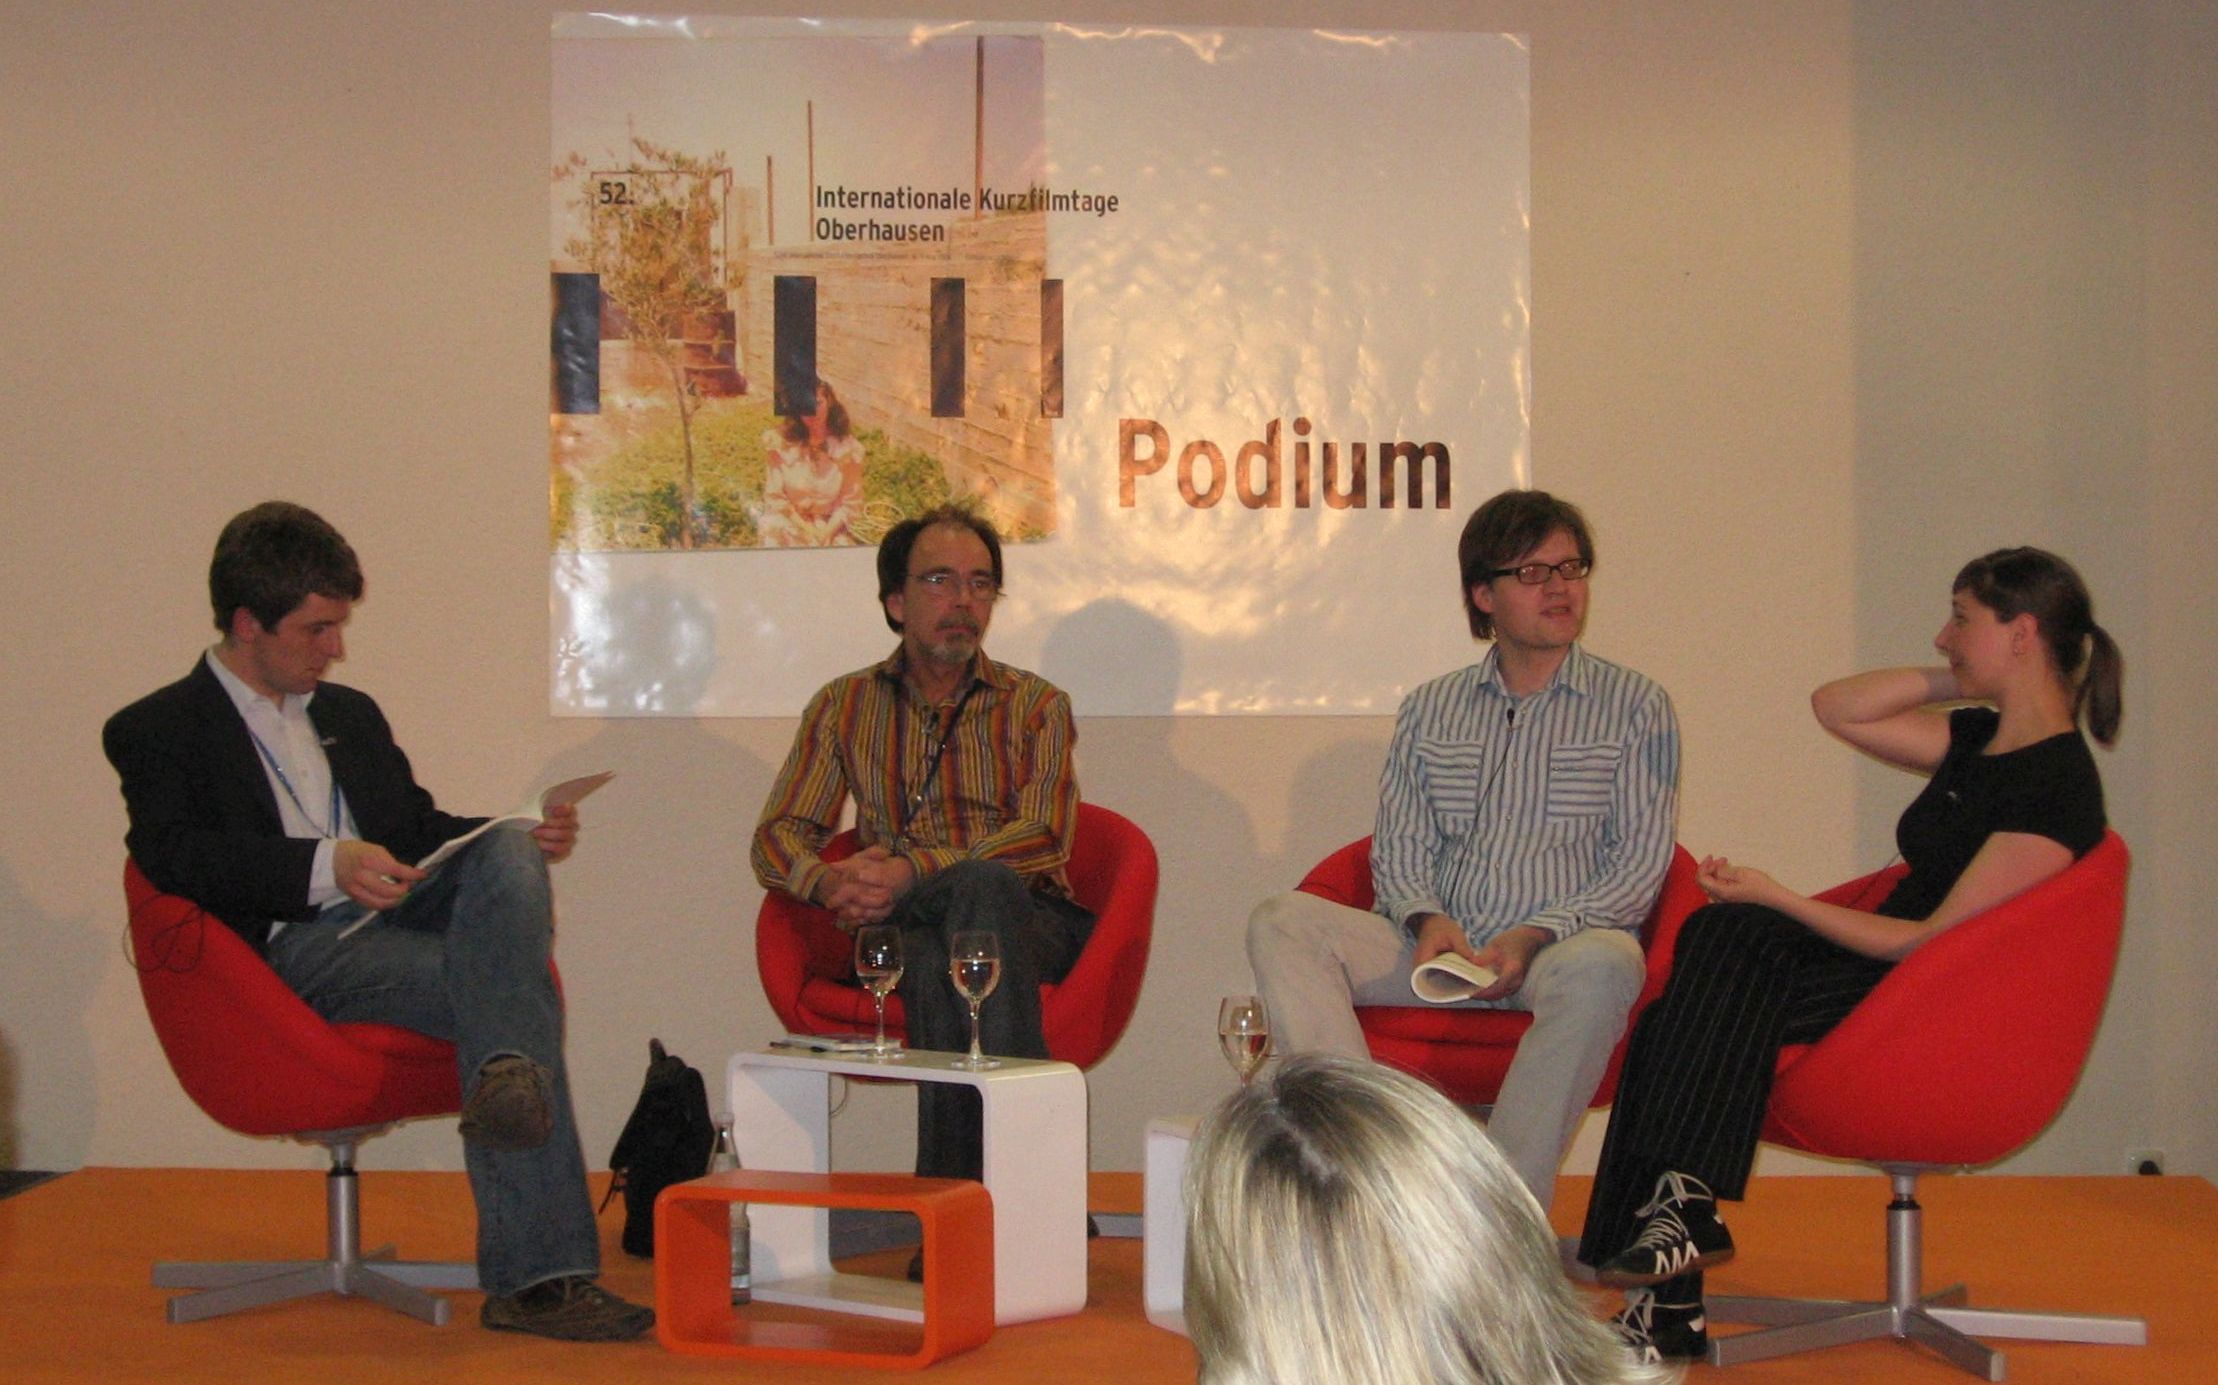 Vorstellung der Studie bei den Kurzfilmtagen Oberhausen 2006: vier Personen sitzen auf einem Podium.